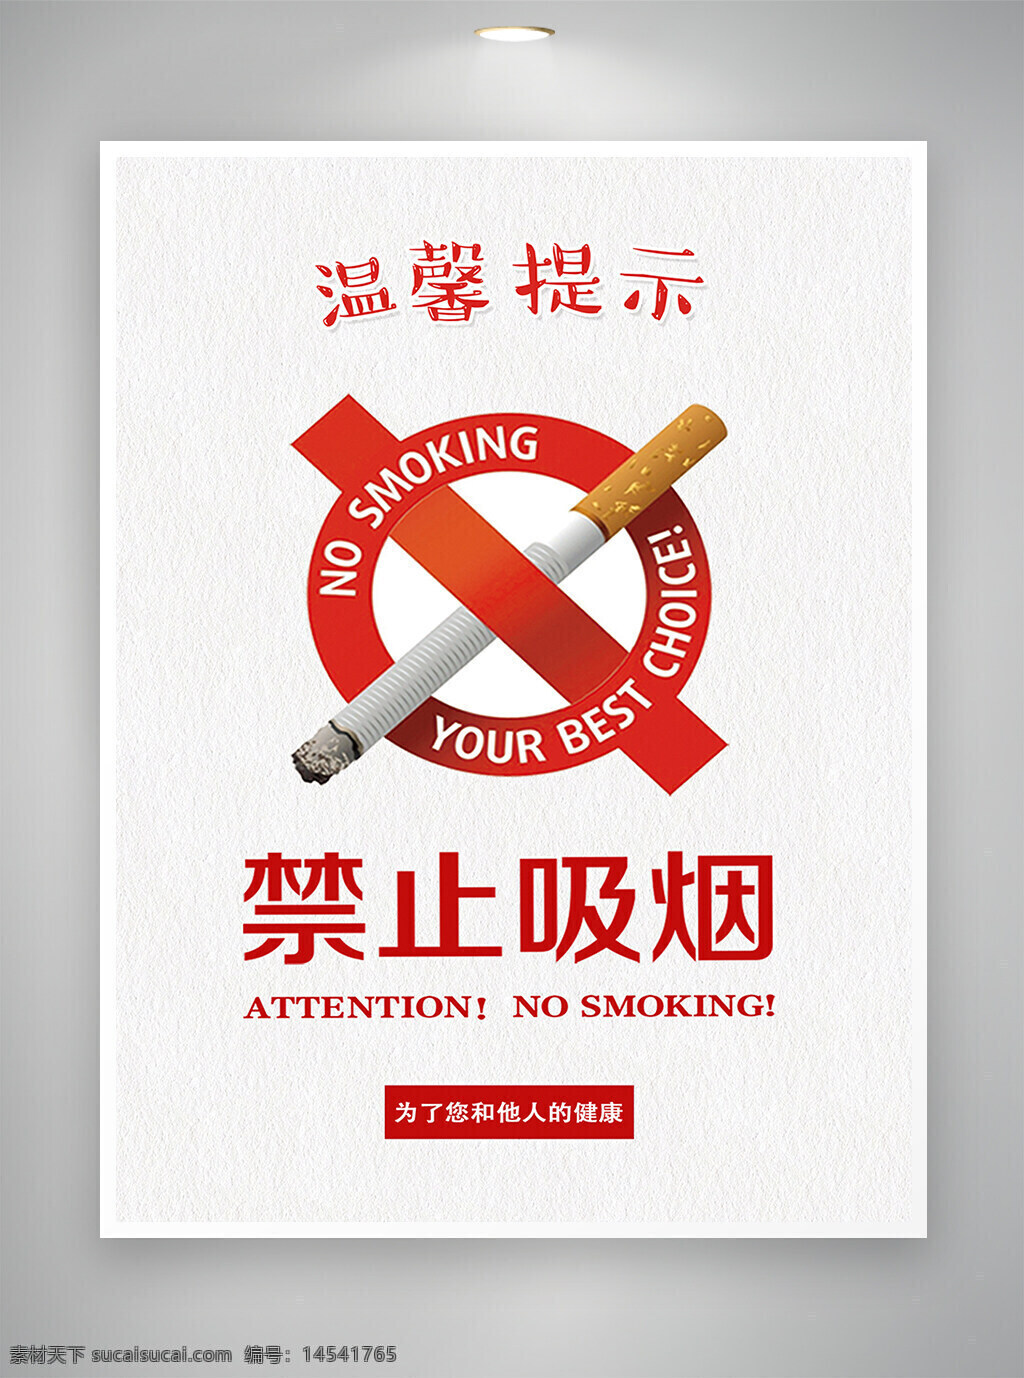 禁止吸烟 禁止吸烟海报 禁止吸烟宣传 宣传海报 简约海报 海报